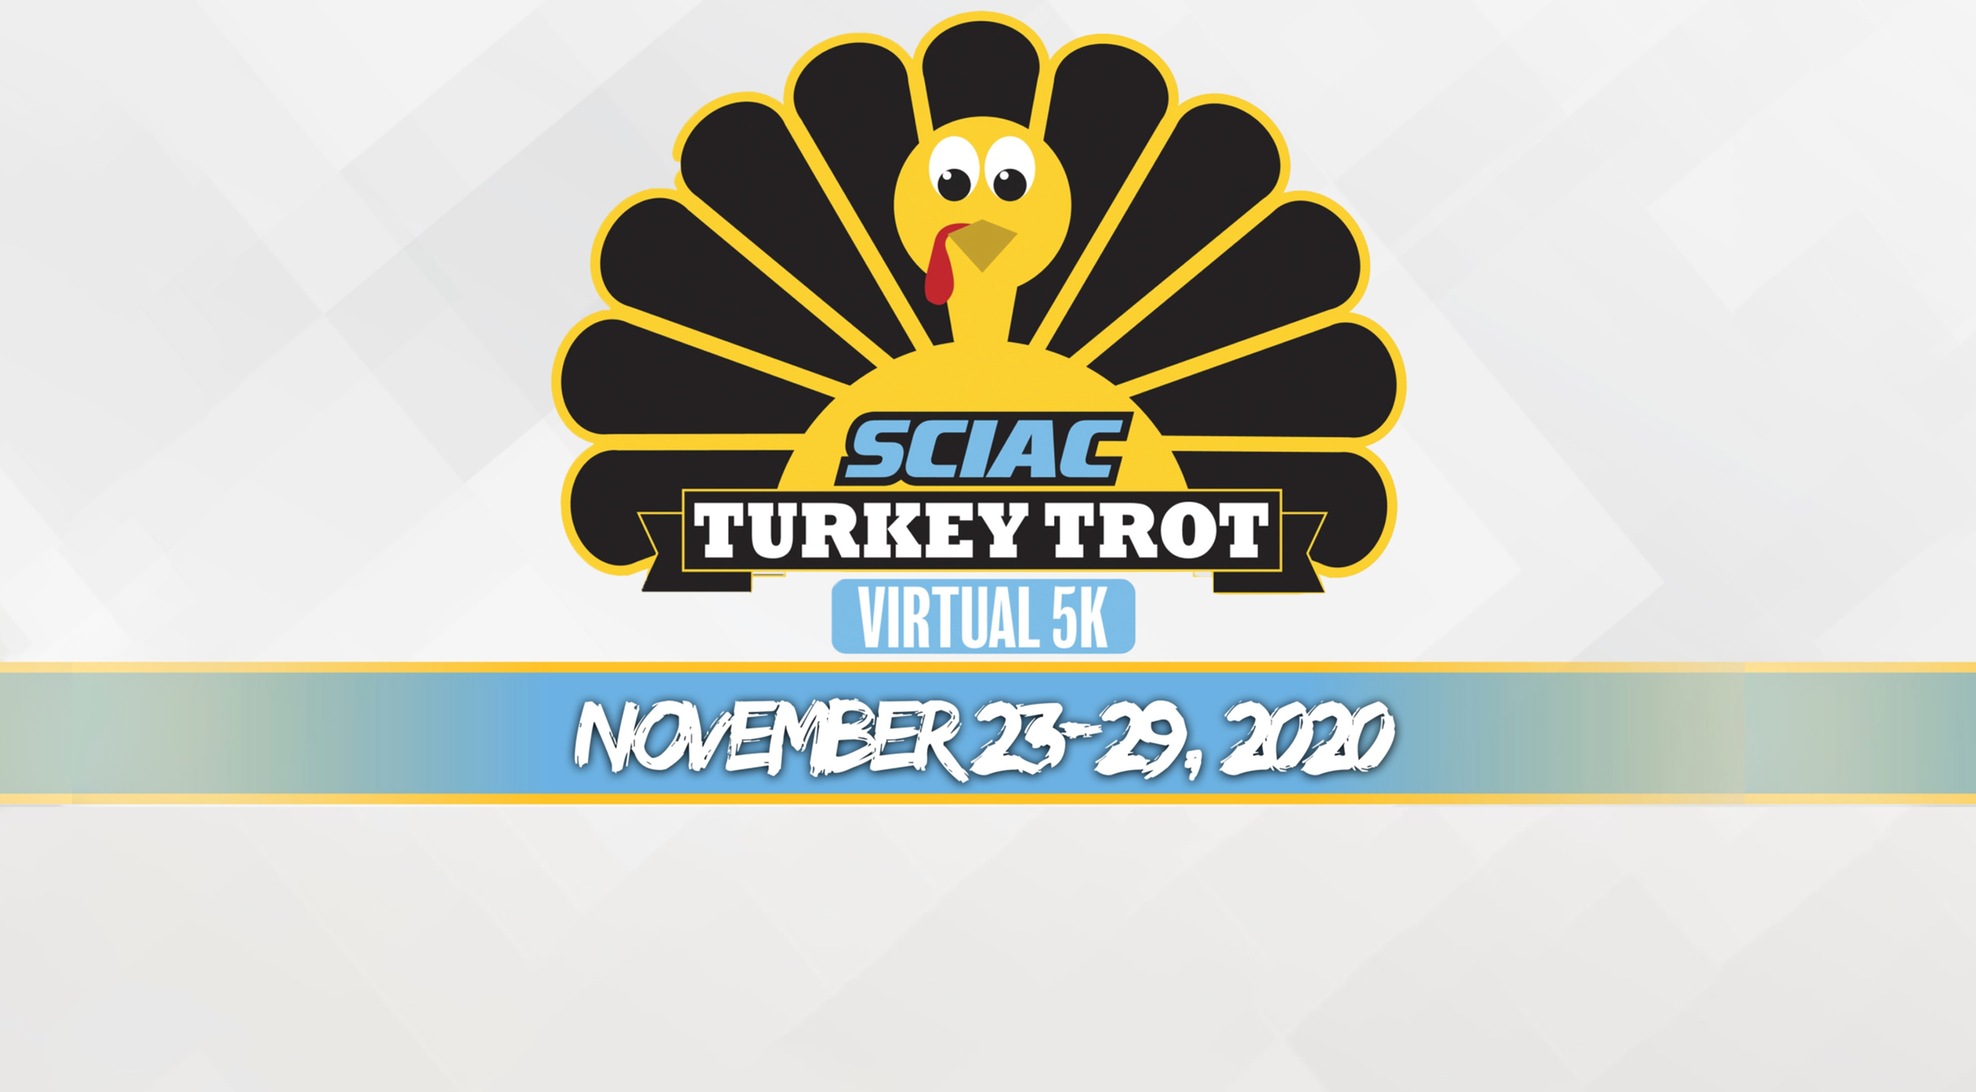 SCIAC to host Virtual 5K Turkey Trot November 23-29